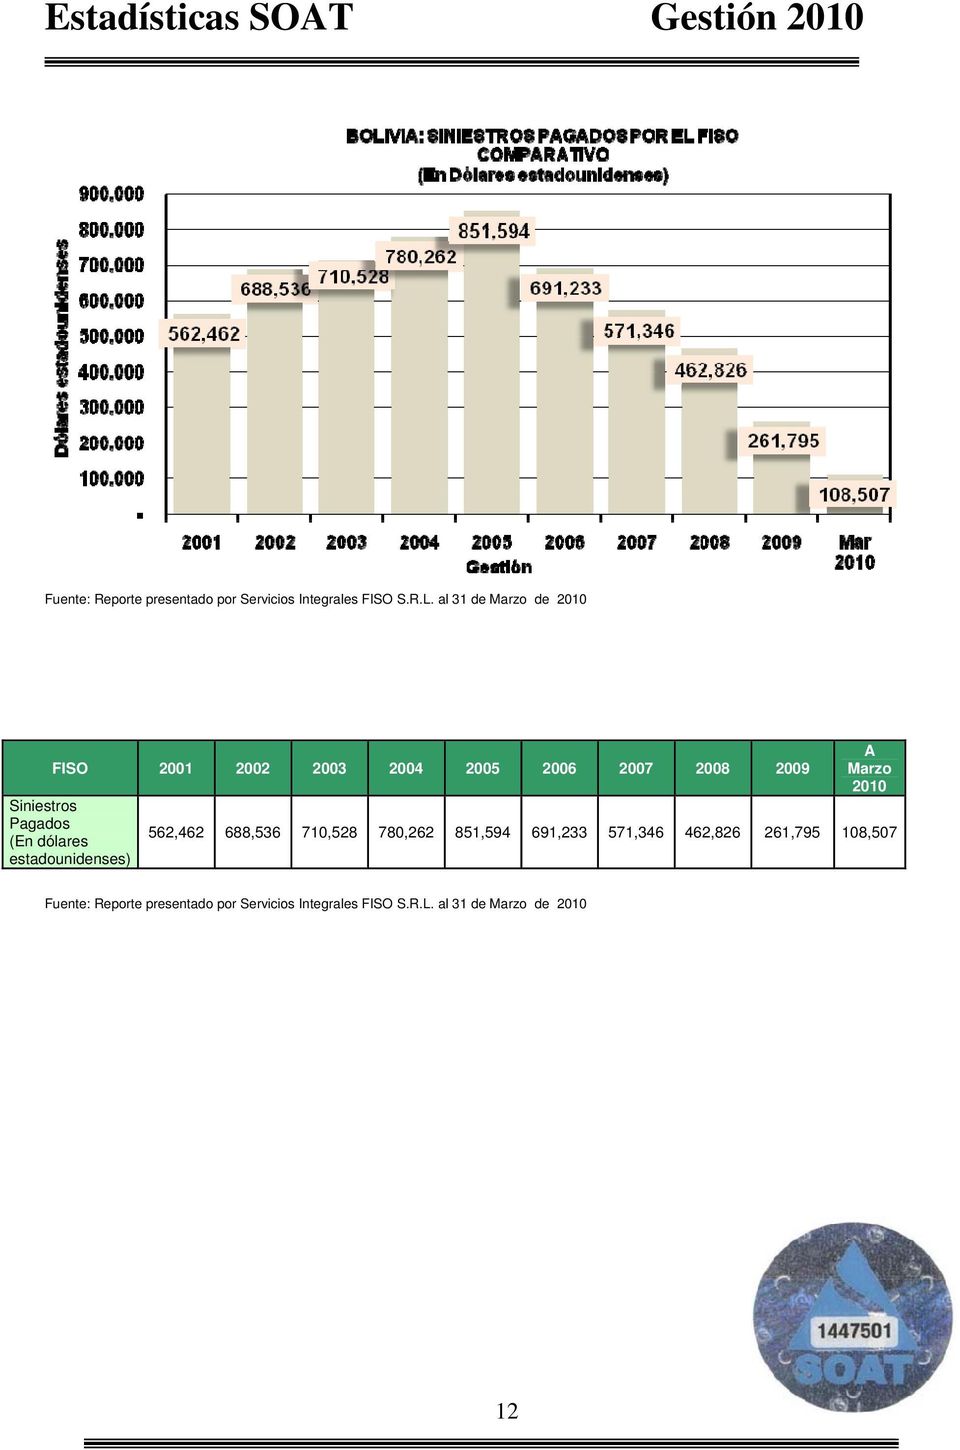 Pagados (En dólares estadounidenses) A Marzo 2010 562,462 688,536 710,528 780,262